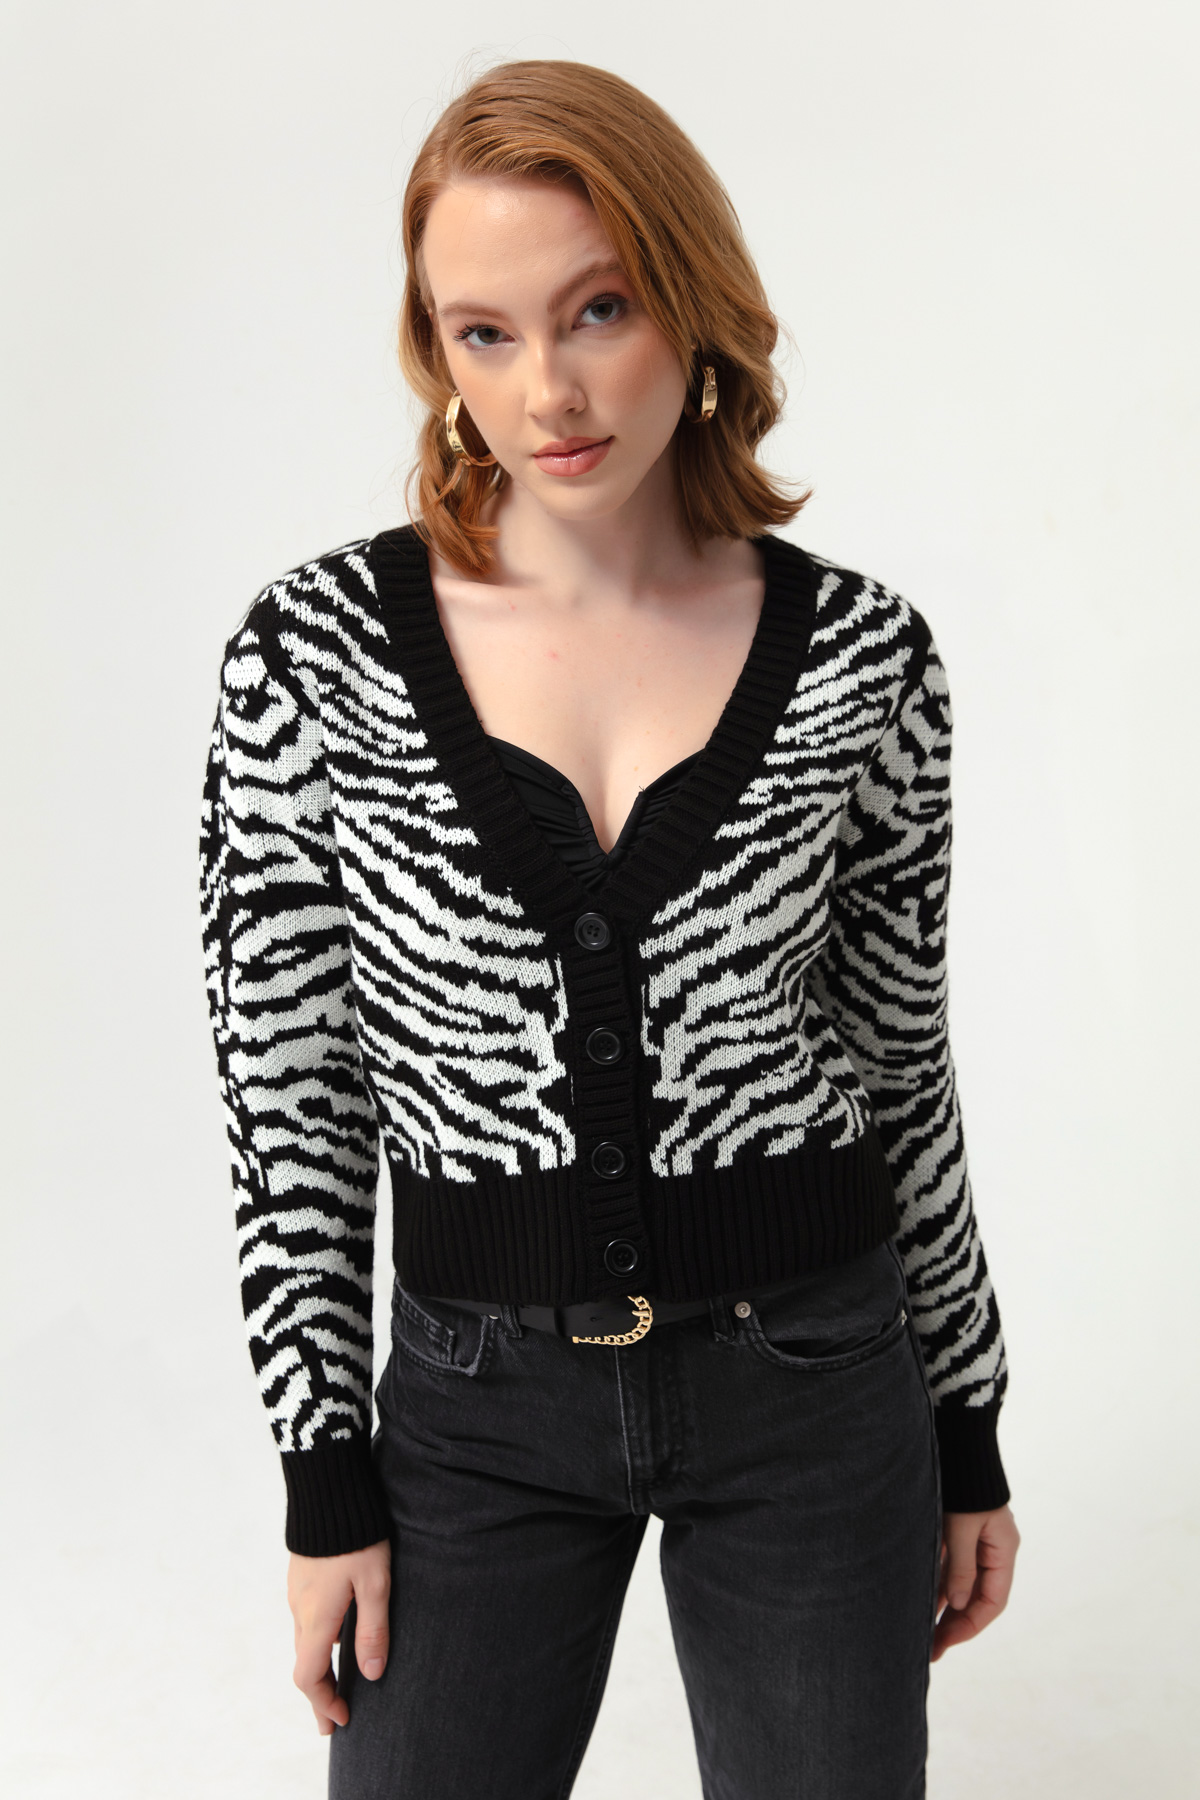 Women's White-Black Patterned Knitwear Cardigan